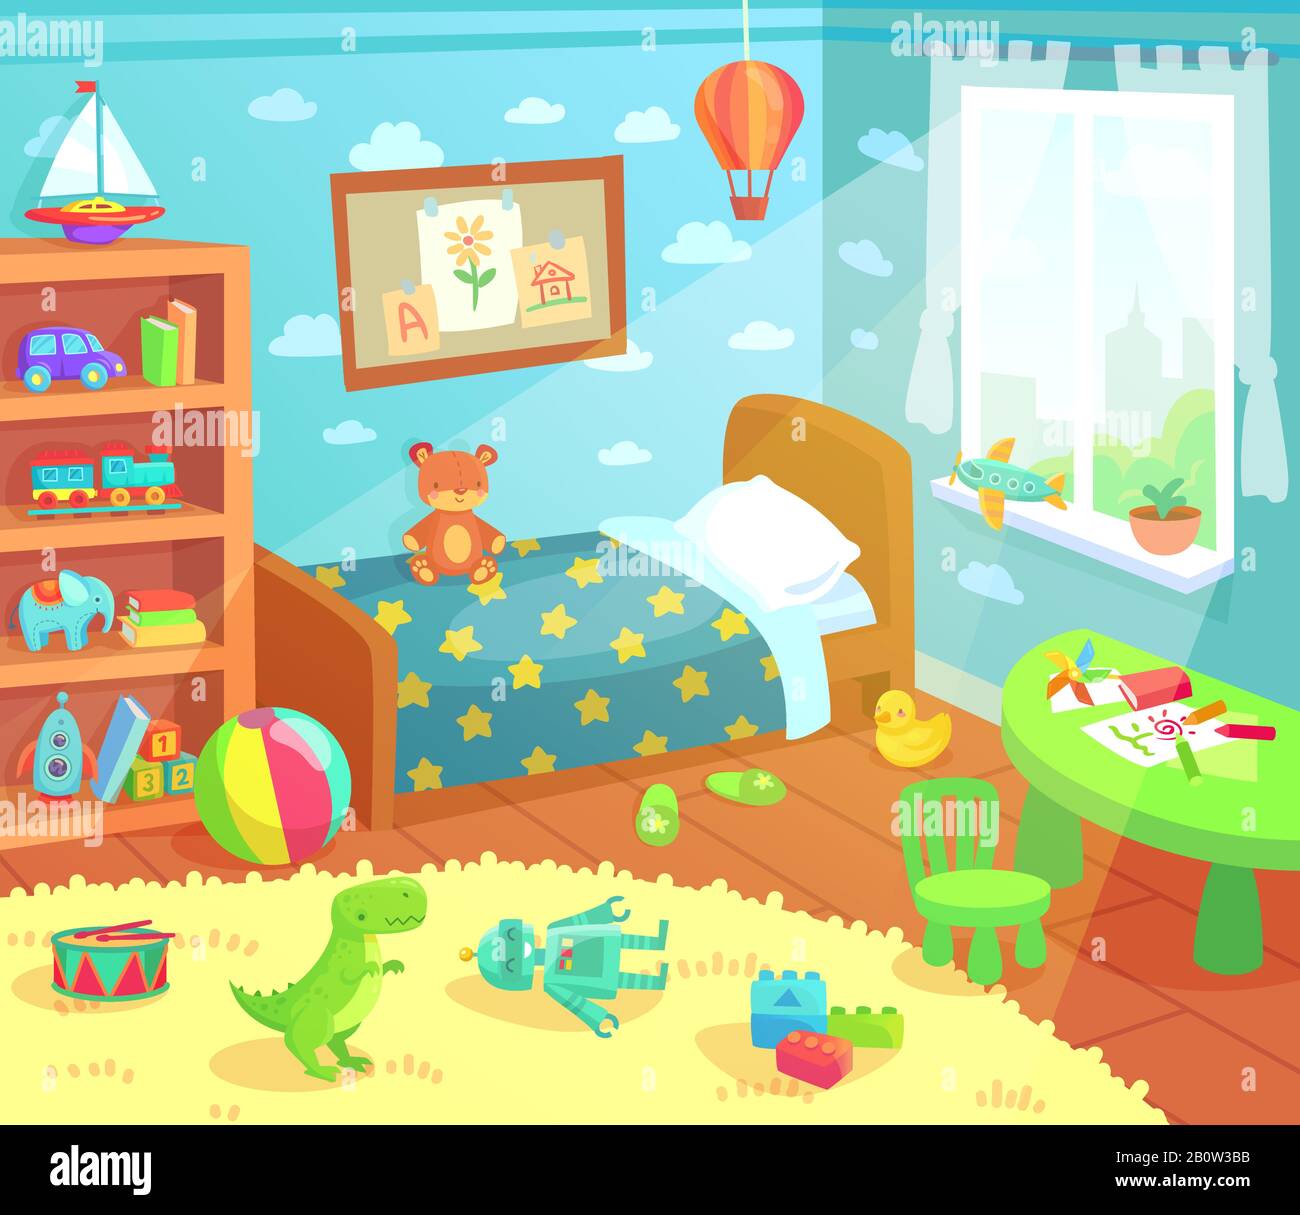 Cartoon Kinder Zimmer innen. Heim Kinderzimmer mit Kinderbett, Kinderspielzeug und Licht aus Fenstervektor-Illustration Stock Vektor